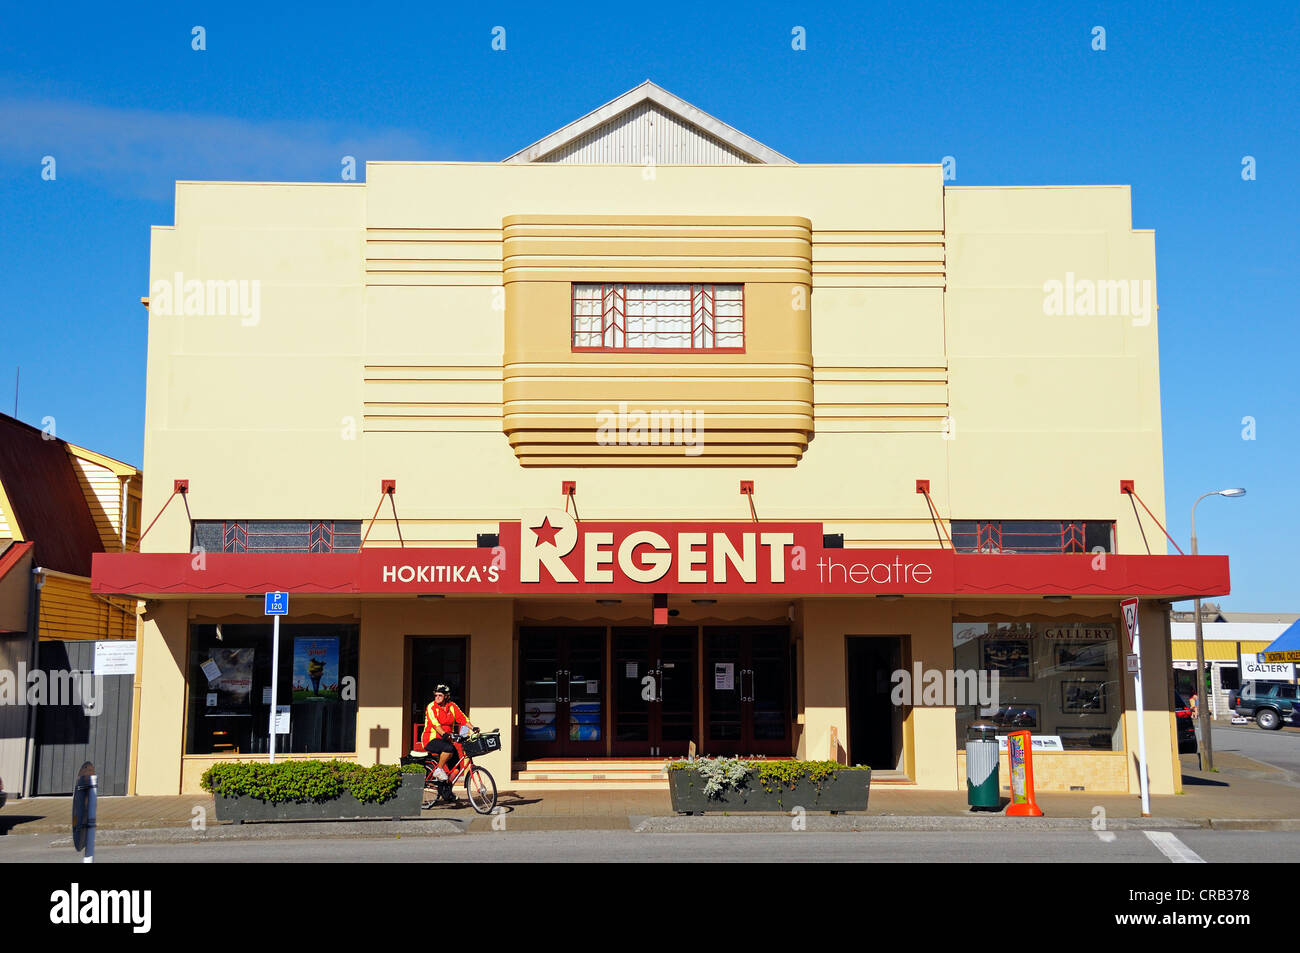 Cinéma avec des éléments Art déco dans la ville d'Hokitika, côte ouest de l'île du sud de la Nouvelle-Zélande Banque D'Images